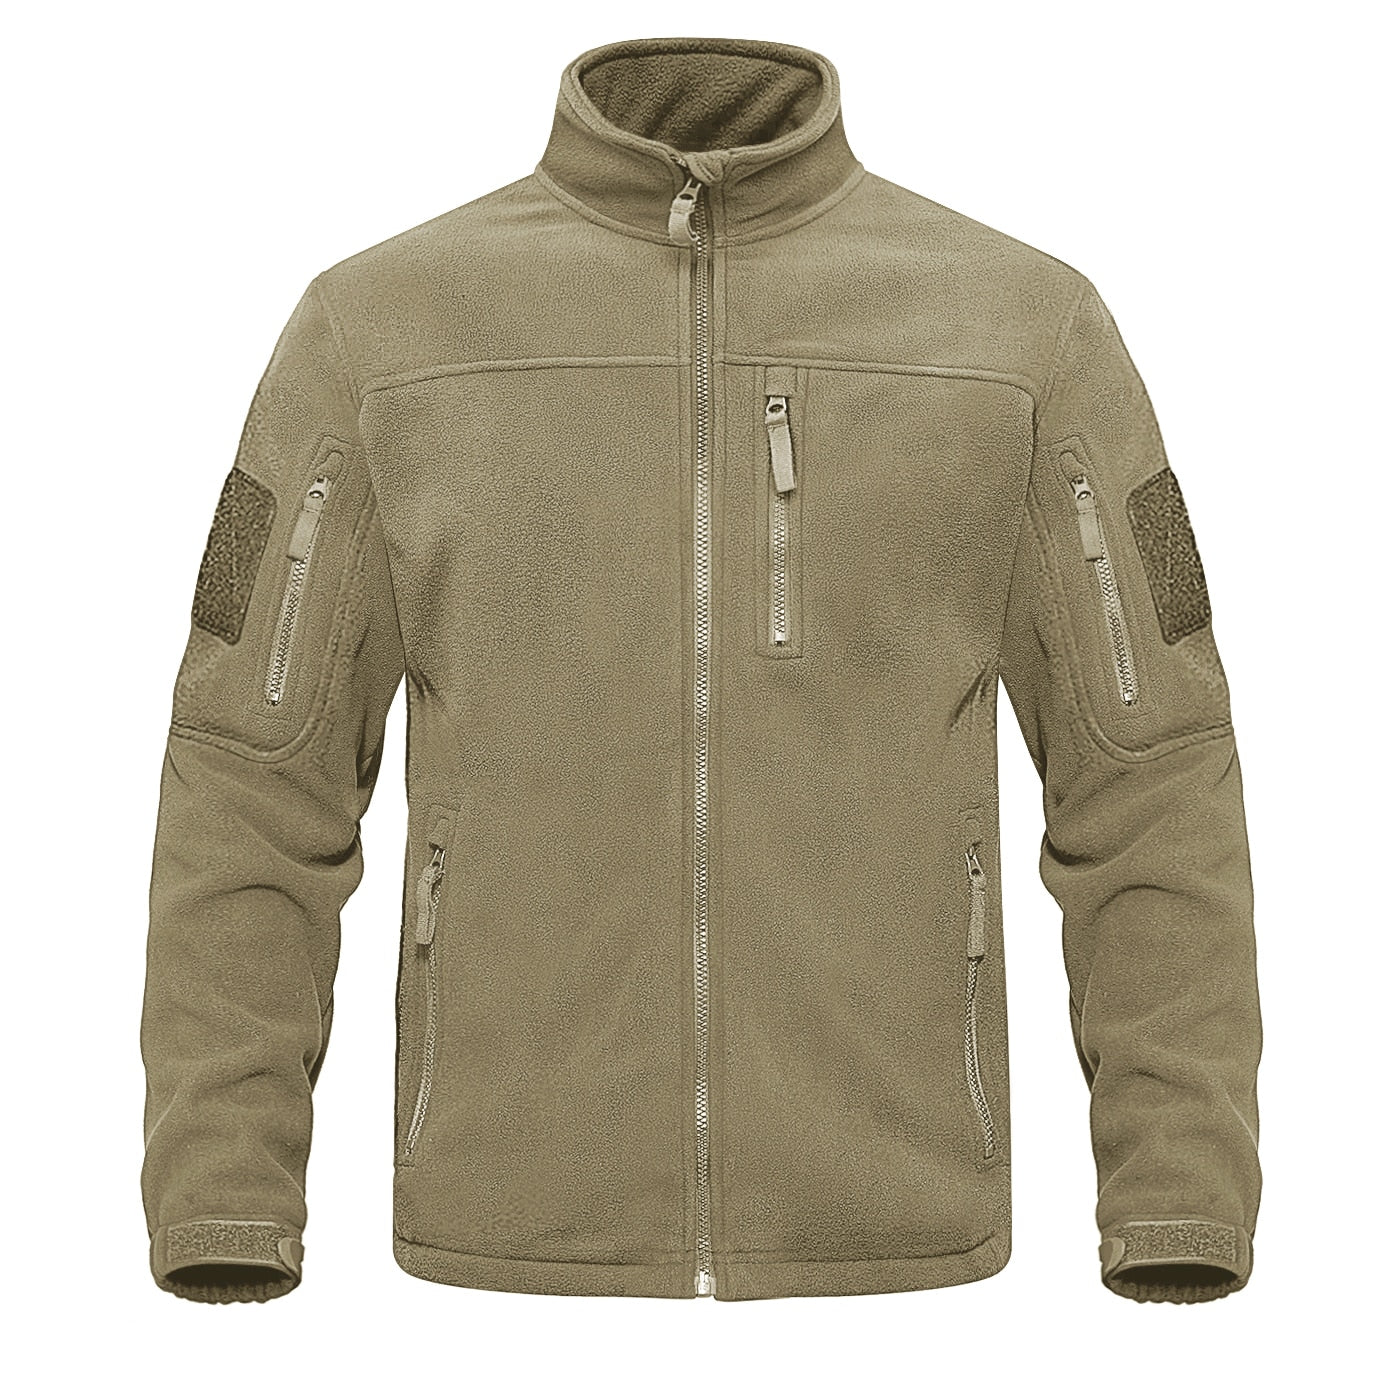 Men's Full Zip Up Tactical Thermal Warm windbreaker Fleece Jacket (11 Colors)